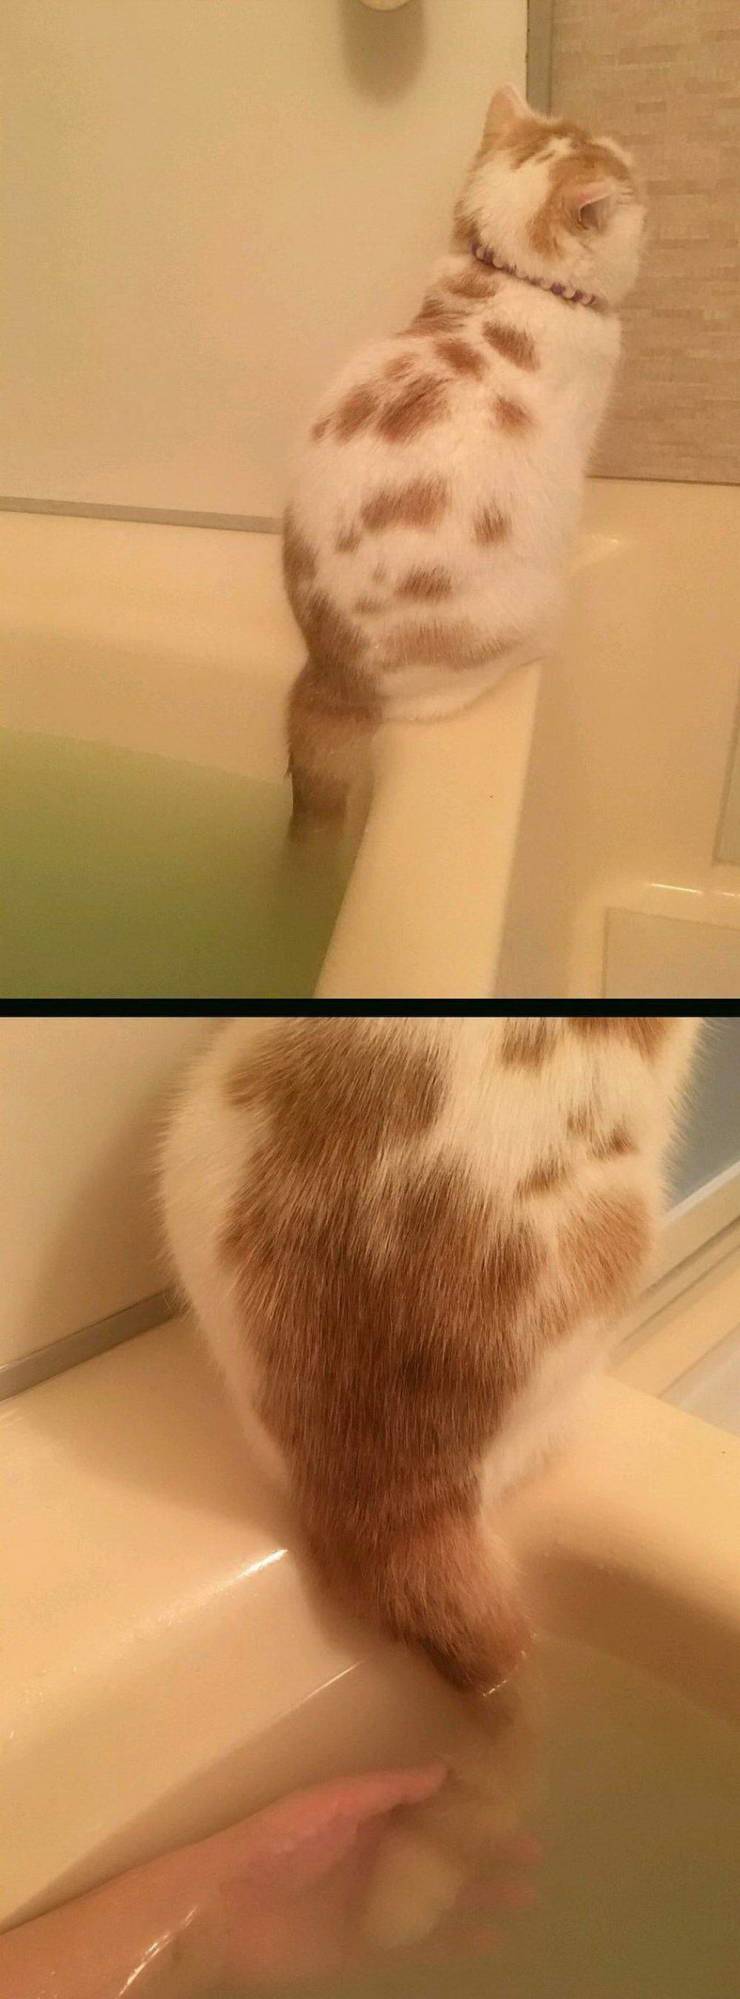 Кот сидит на ванне